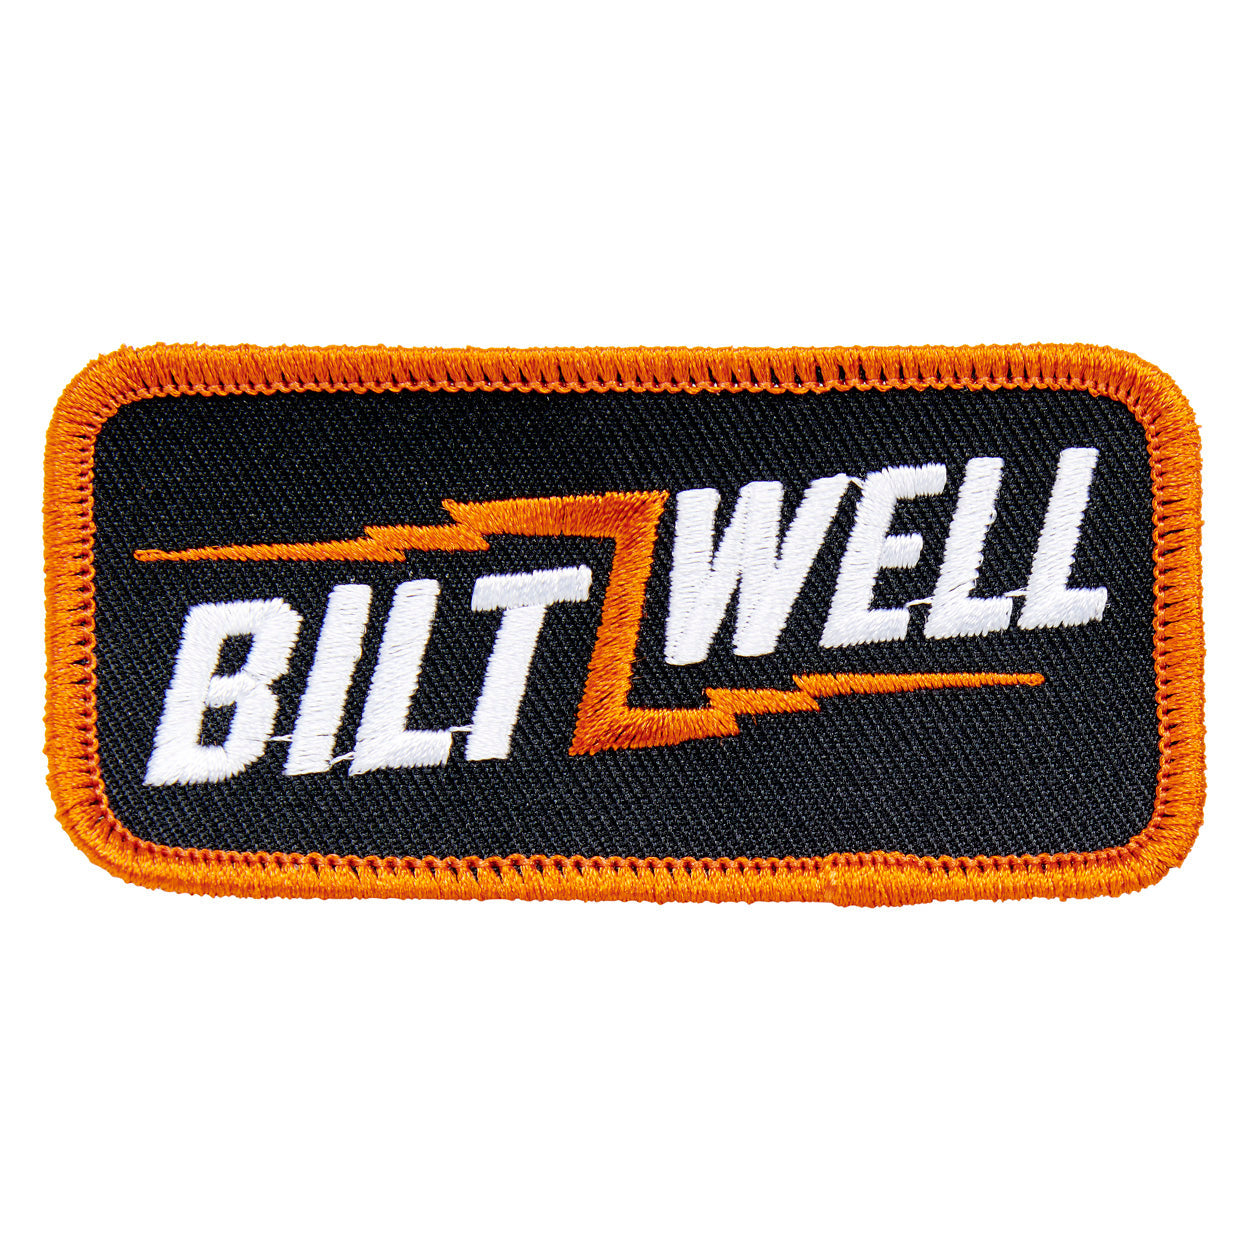 Biltwell Patch - Bolt